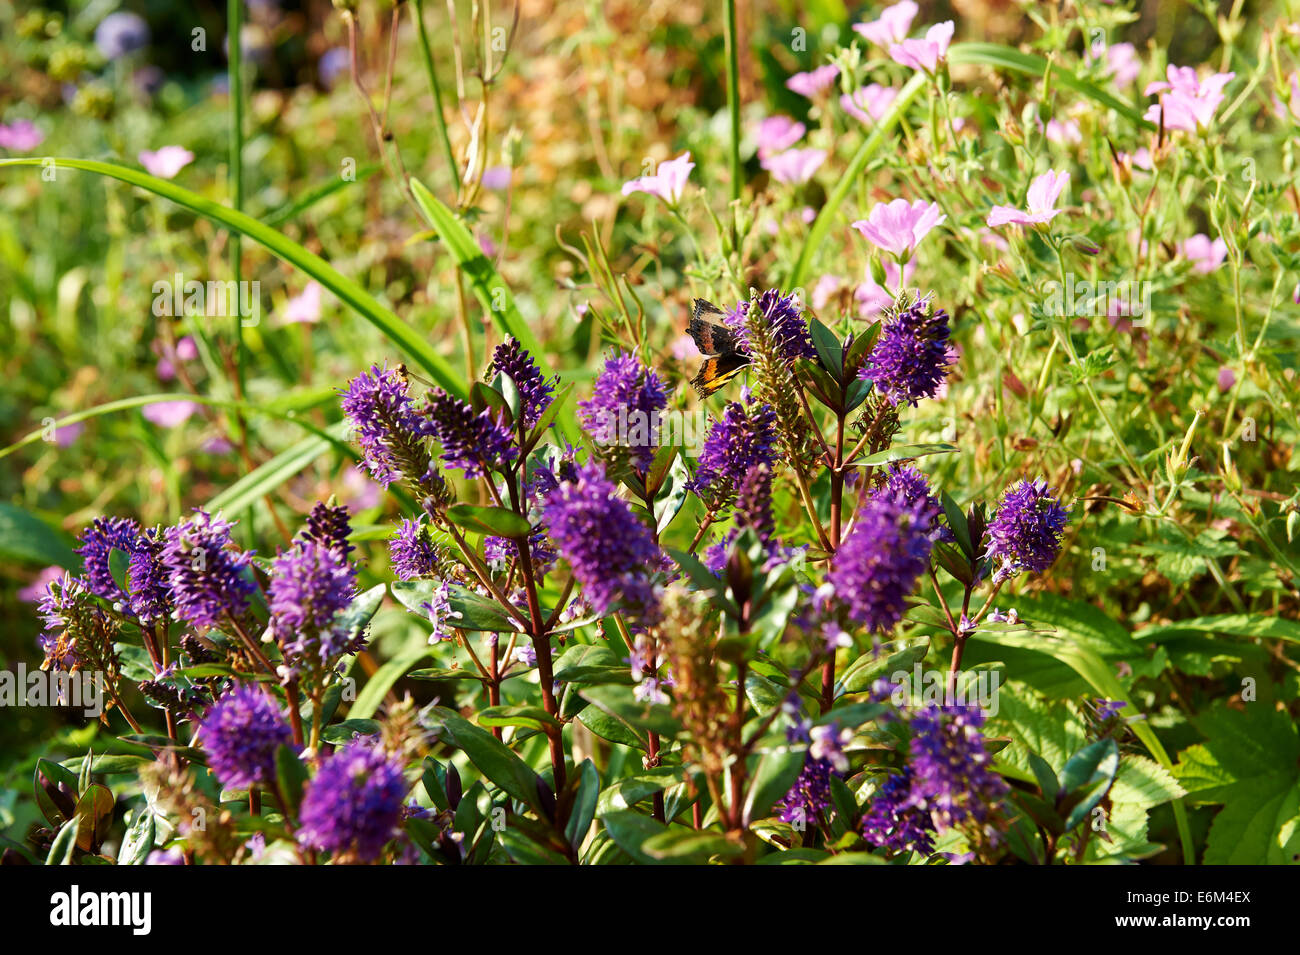 Jardin d'été de fleurs, Hebe, non identifiées avec petit papillon écaille Aglais urticae. Banque D'Images